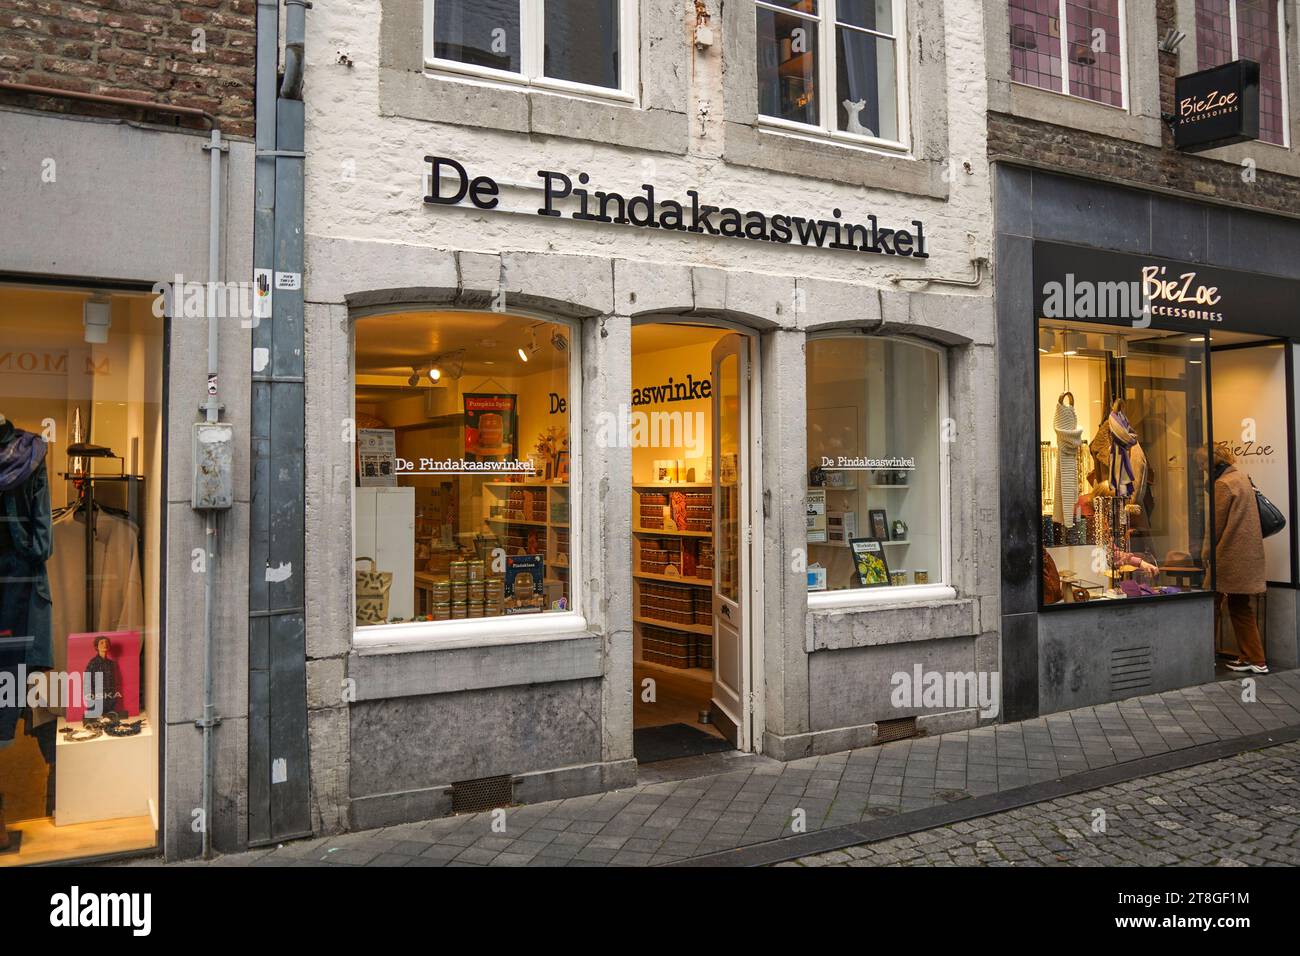 Shop, de pindakaaswinkel, Verkauf natürlicher Erdnussbutter, Maastricht, Limburg, Niederlande Stockfoto